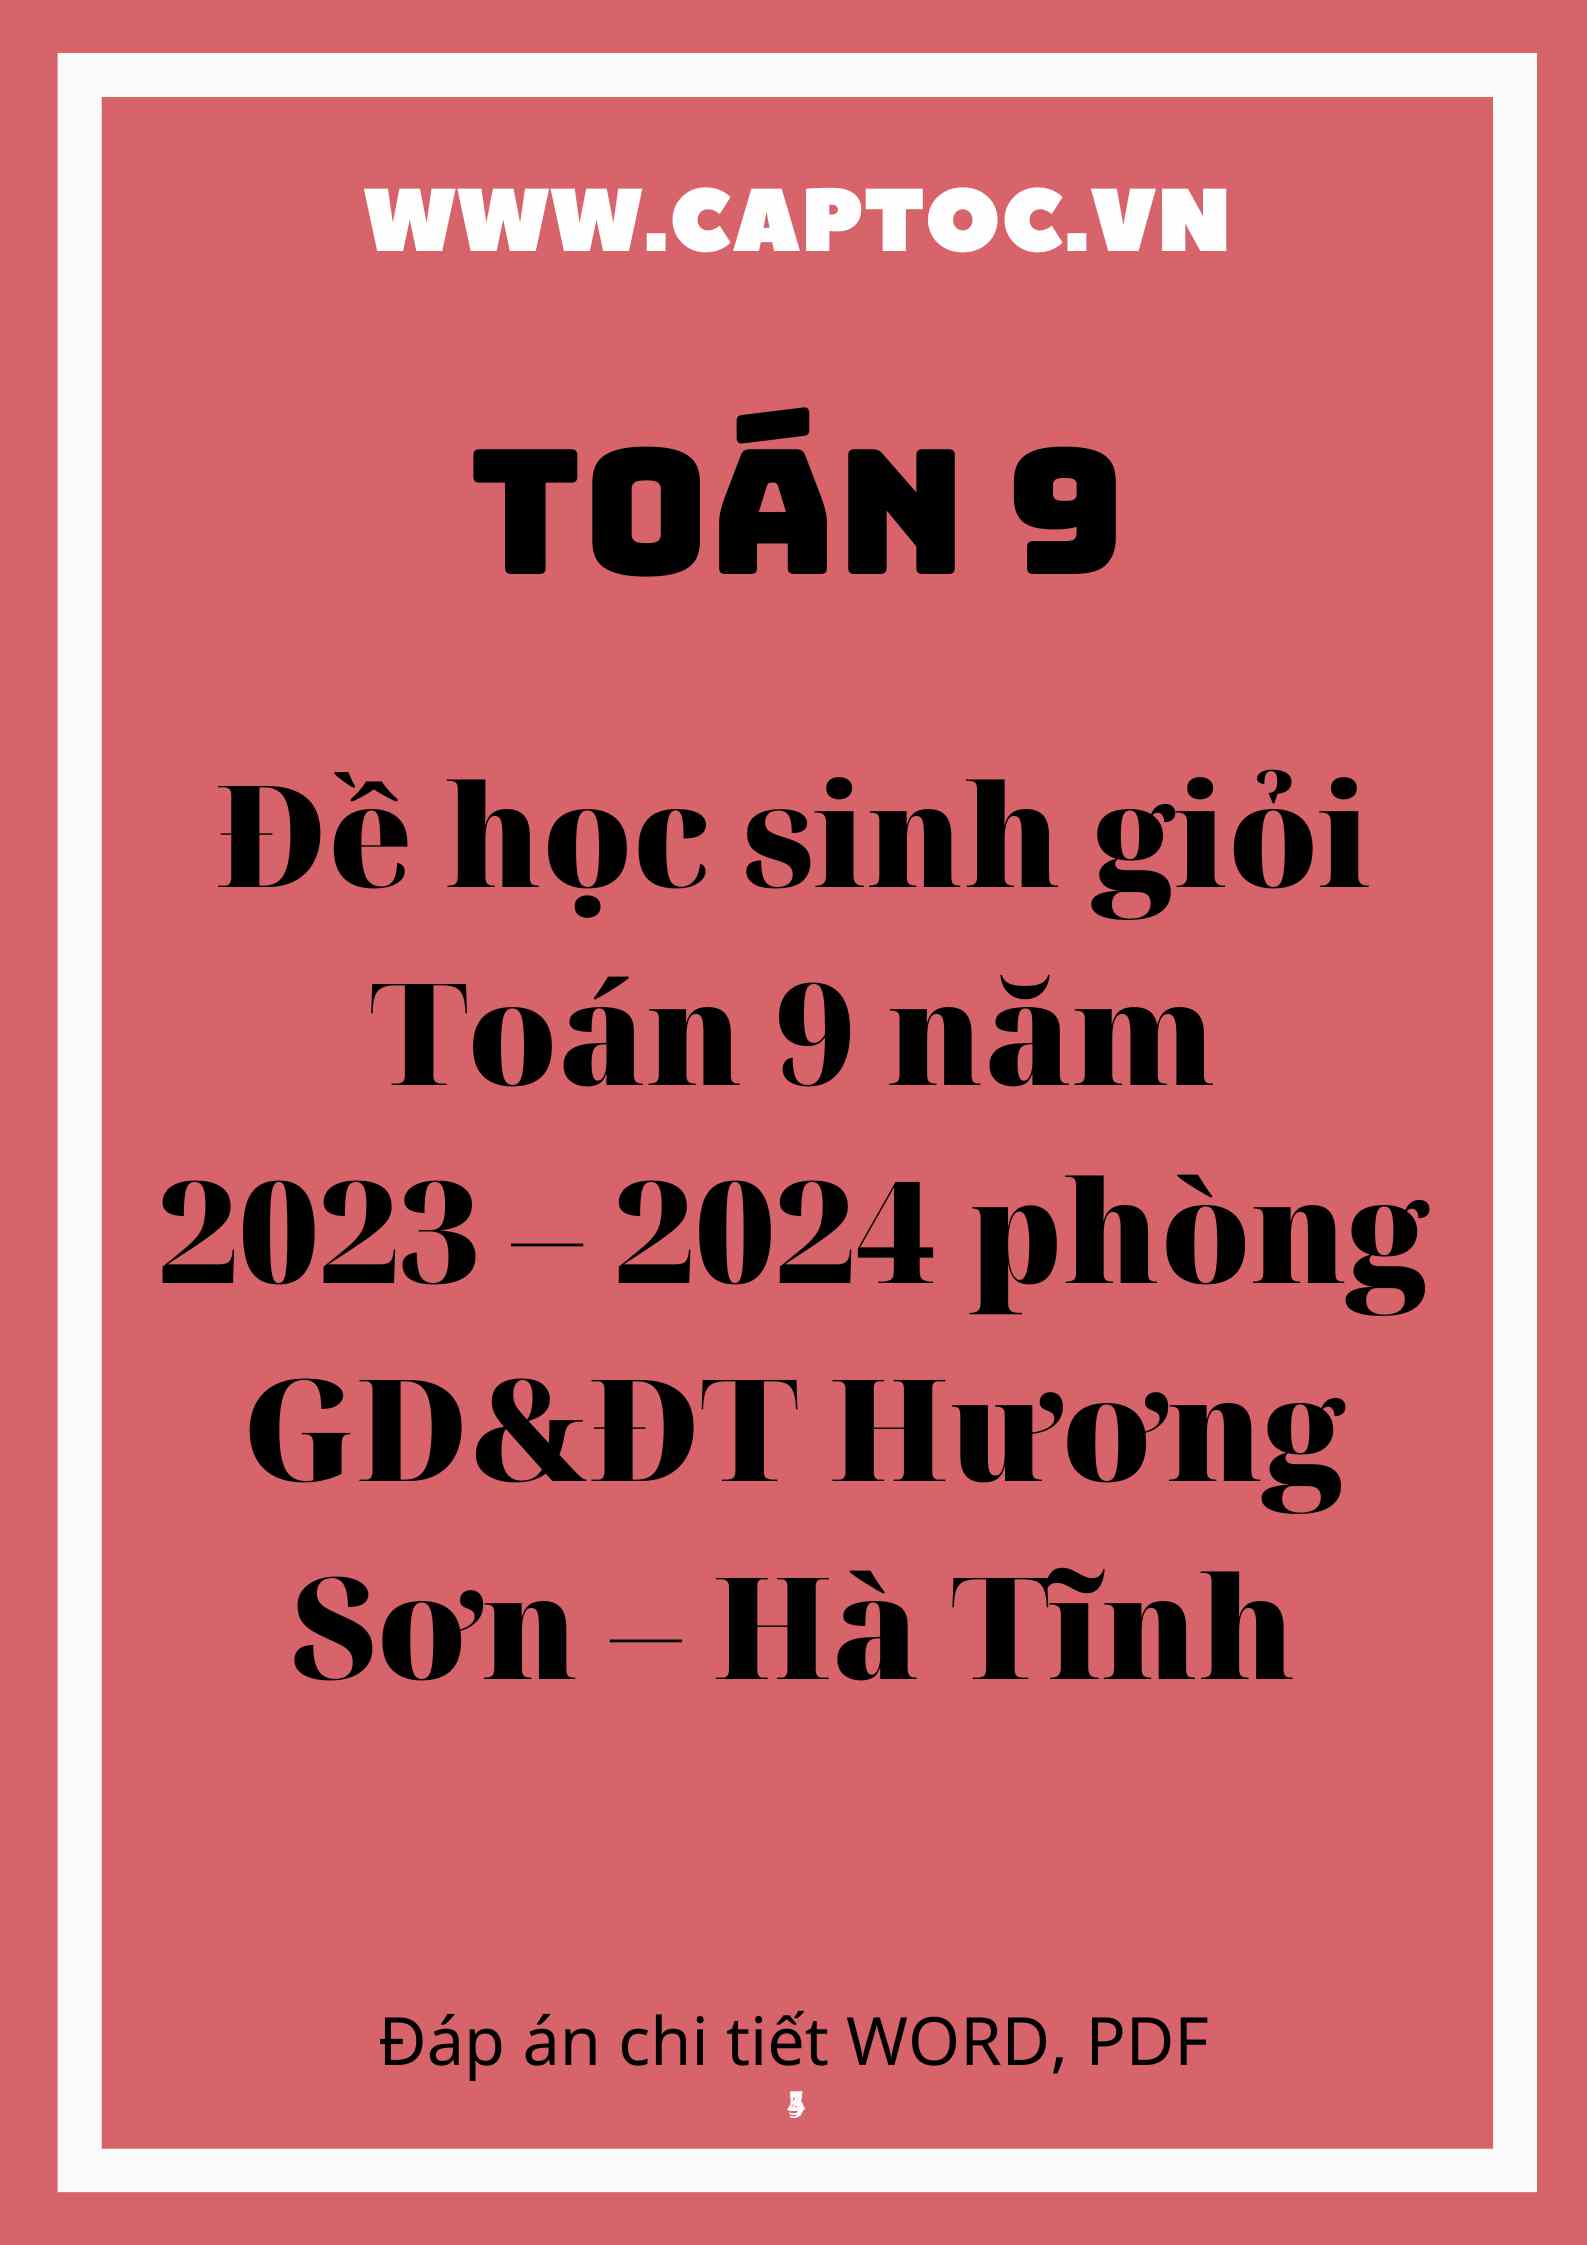 Đề học sinh giỏi Toán 9 năm 2023 – 2024 phòng GD&ĐT Hương Sơn – Hà Tĩnh